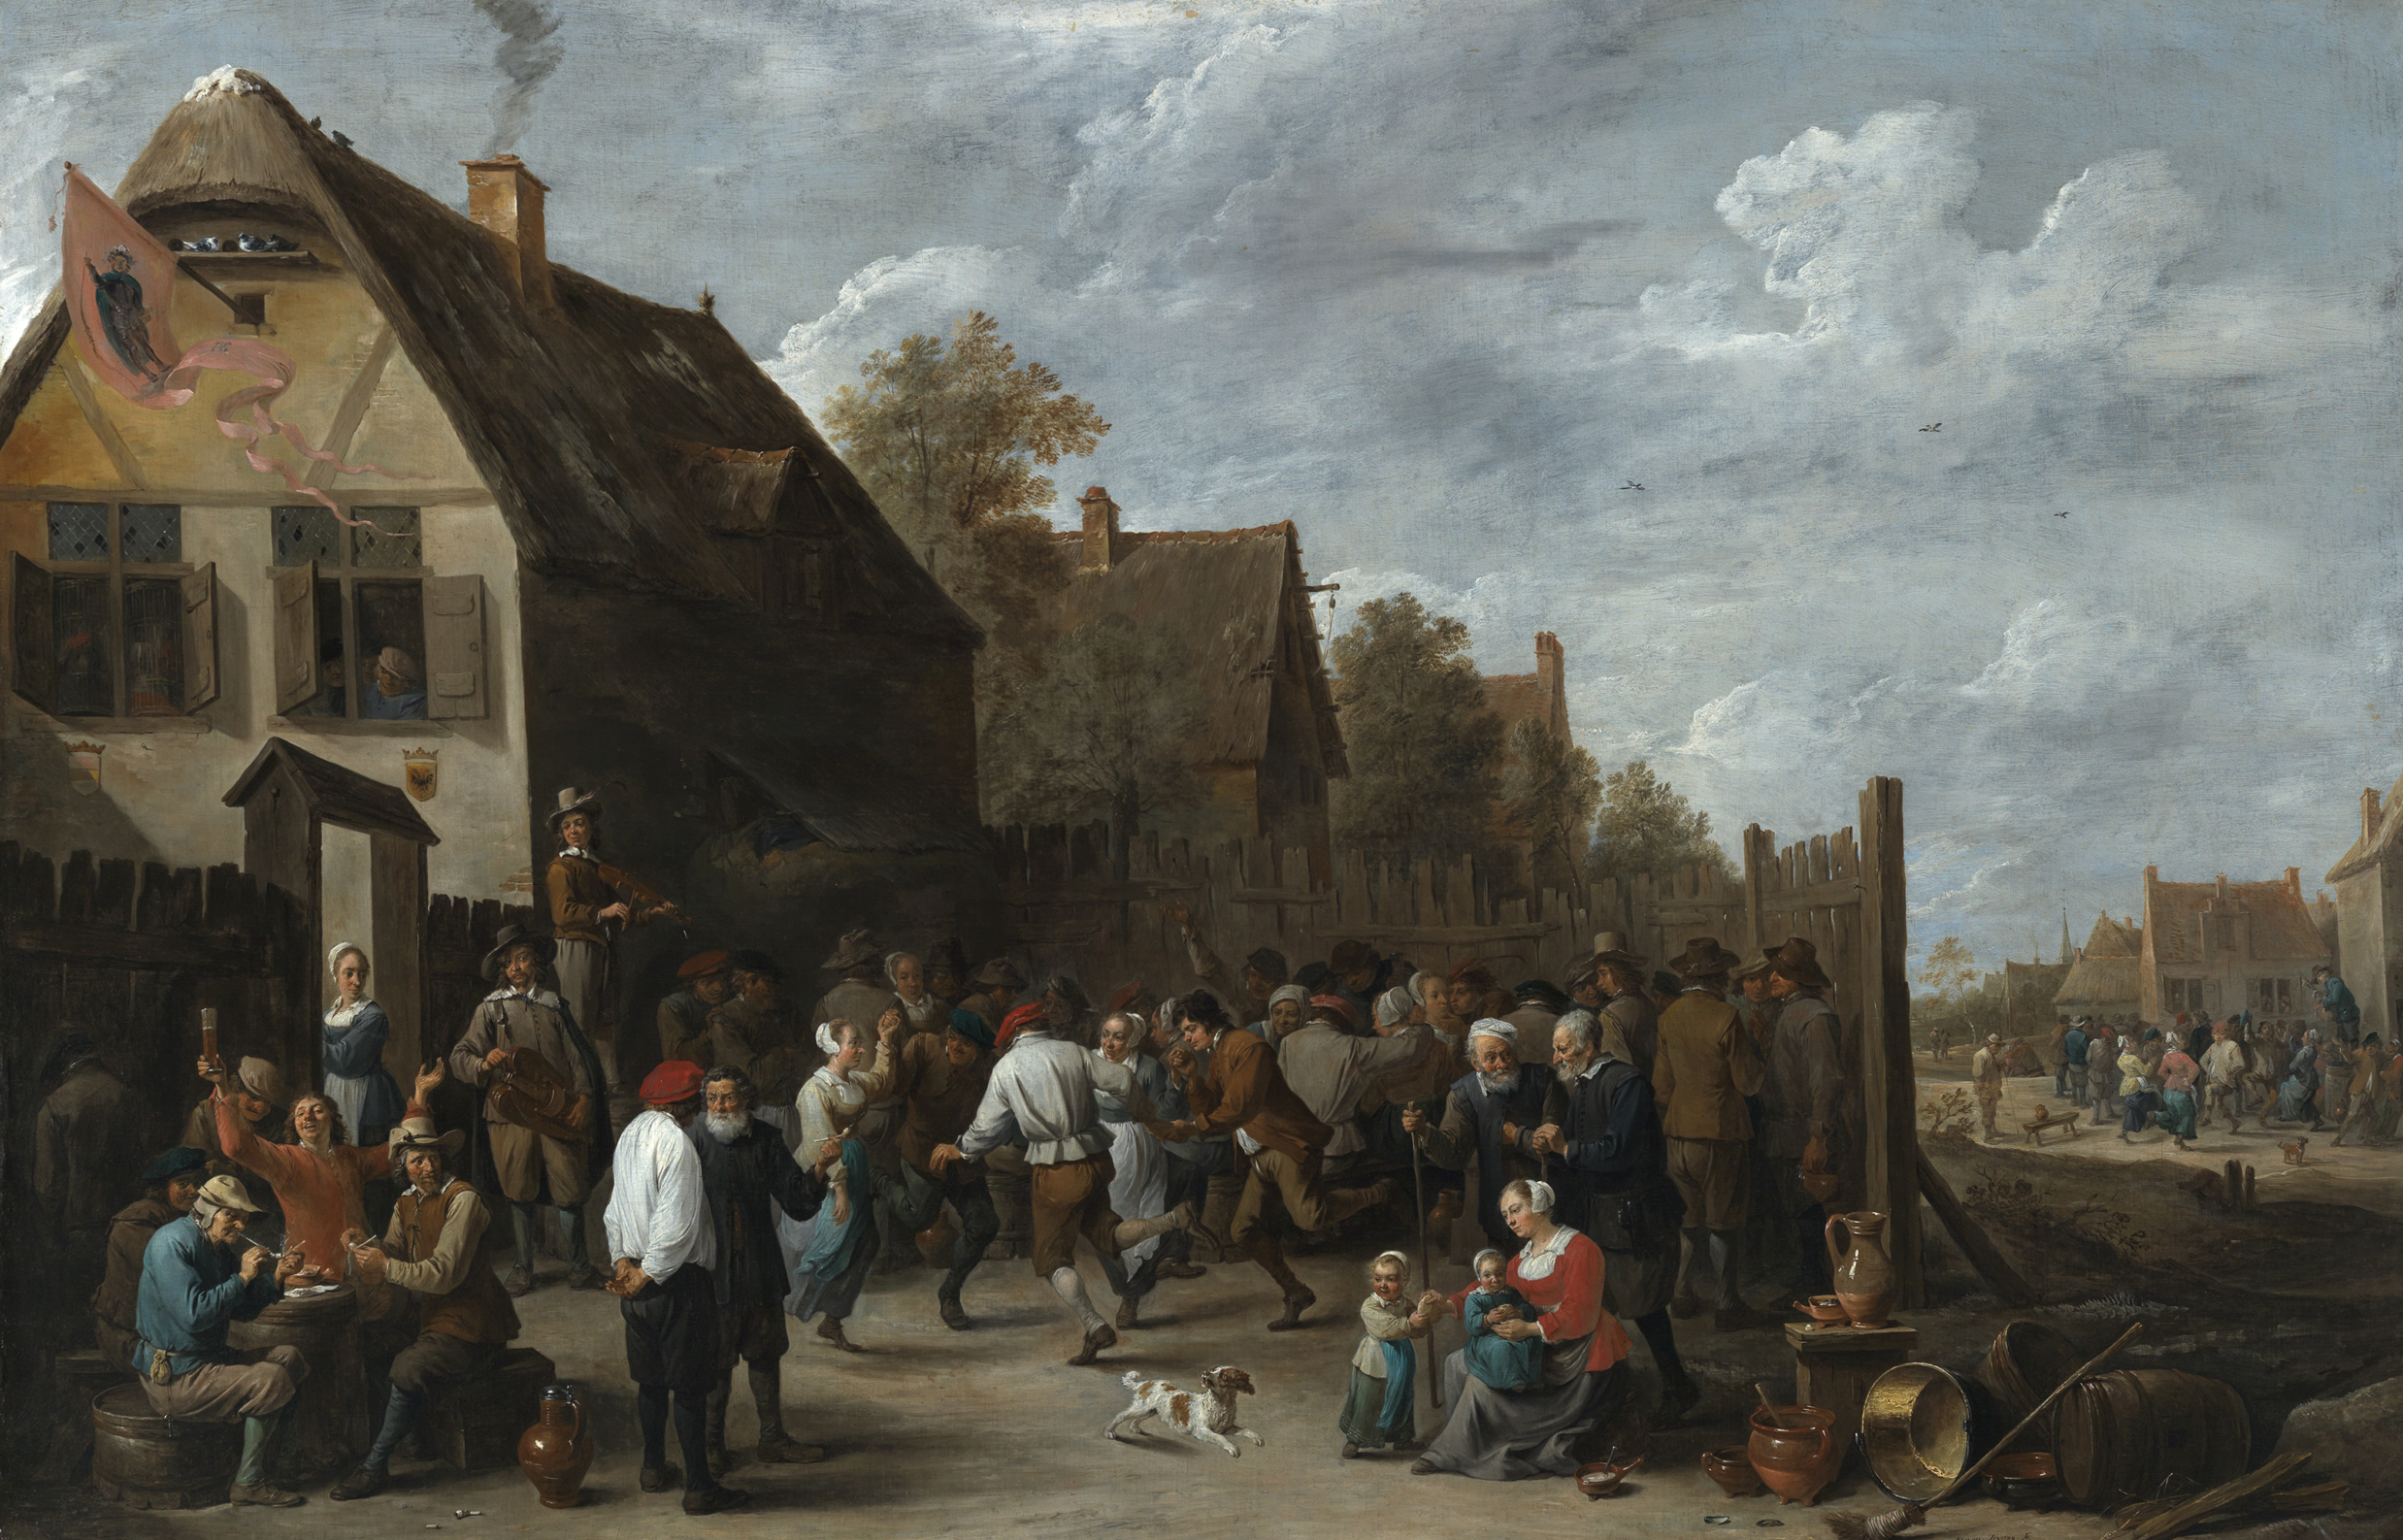 Abbildung des Gemäldes Dorffest von David Teniers, das feiernde Menschen zeigt.